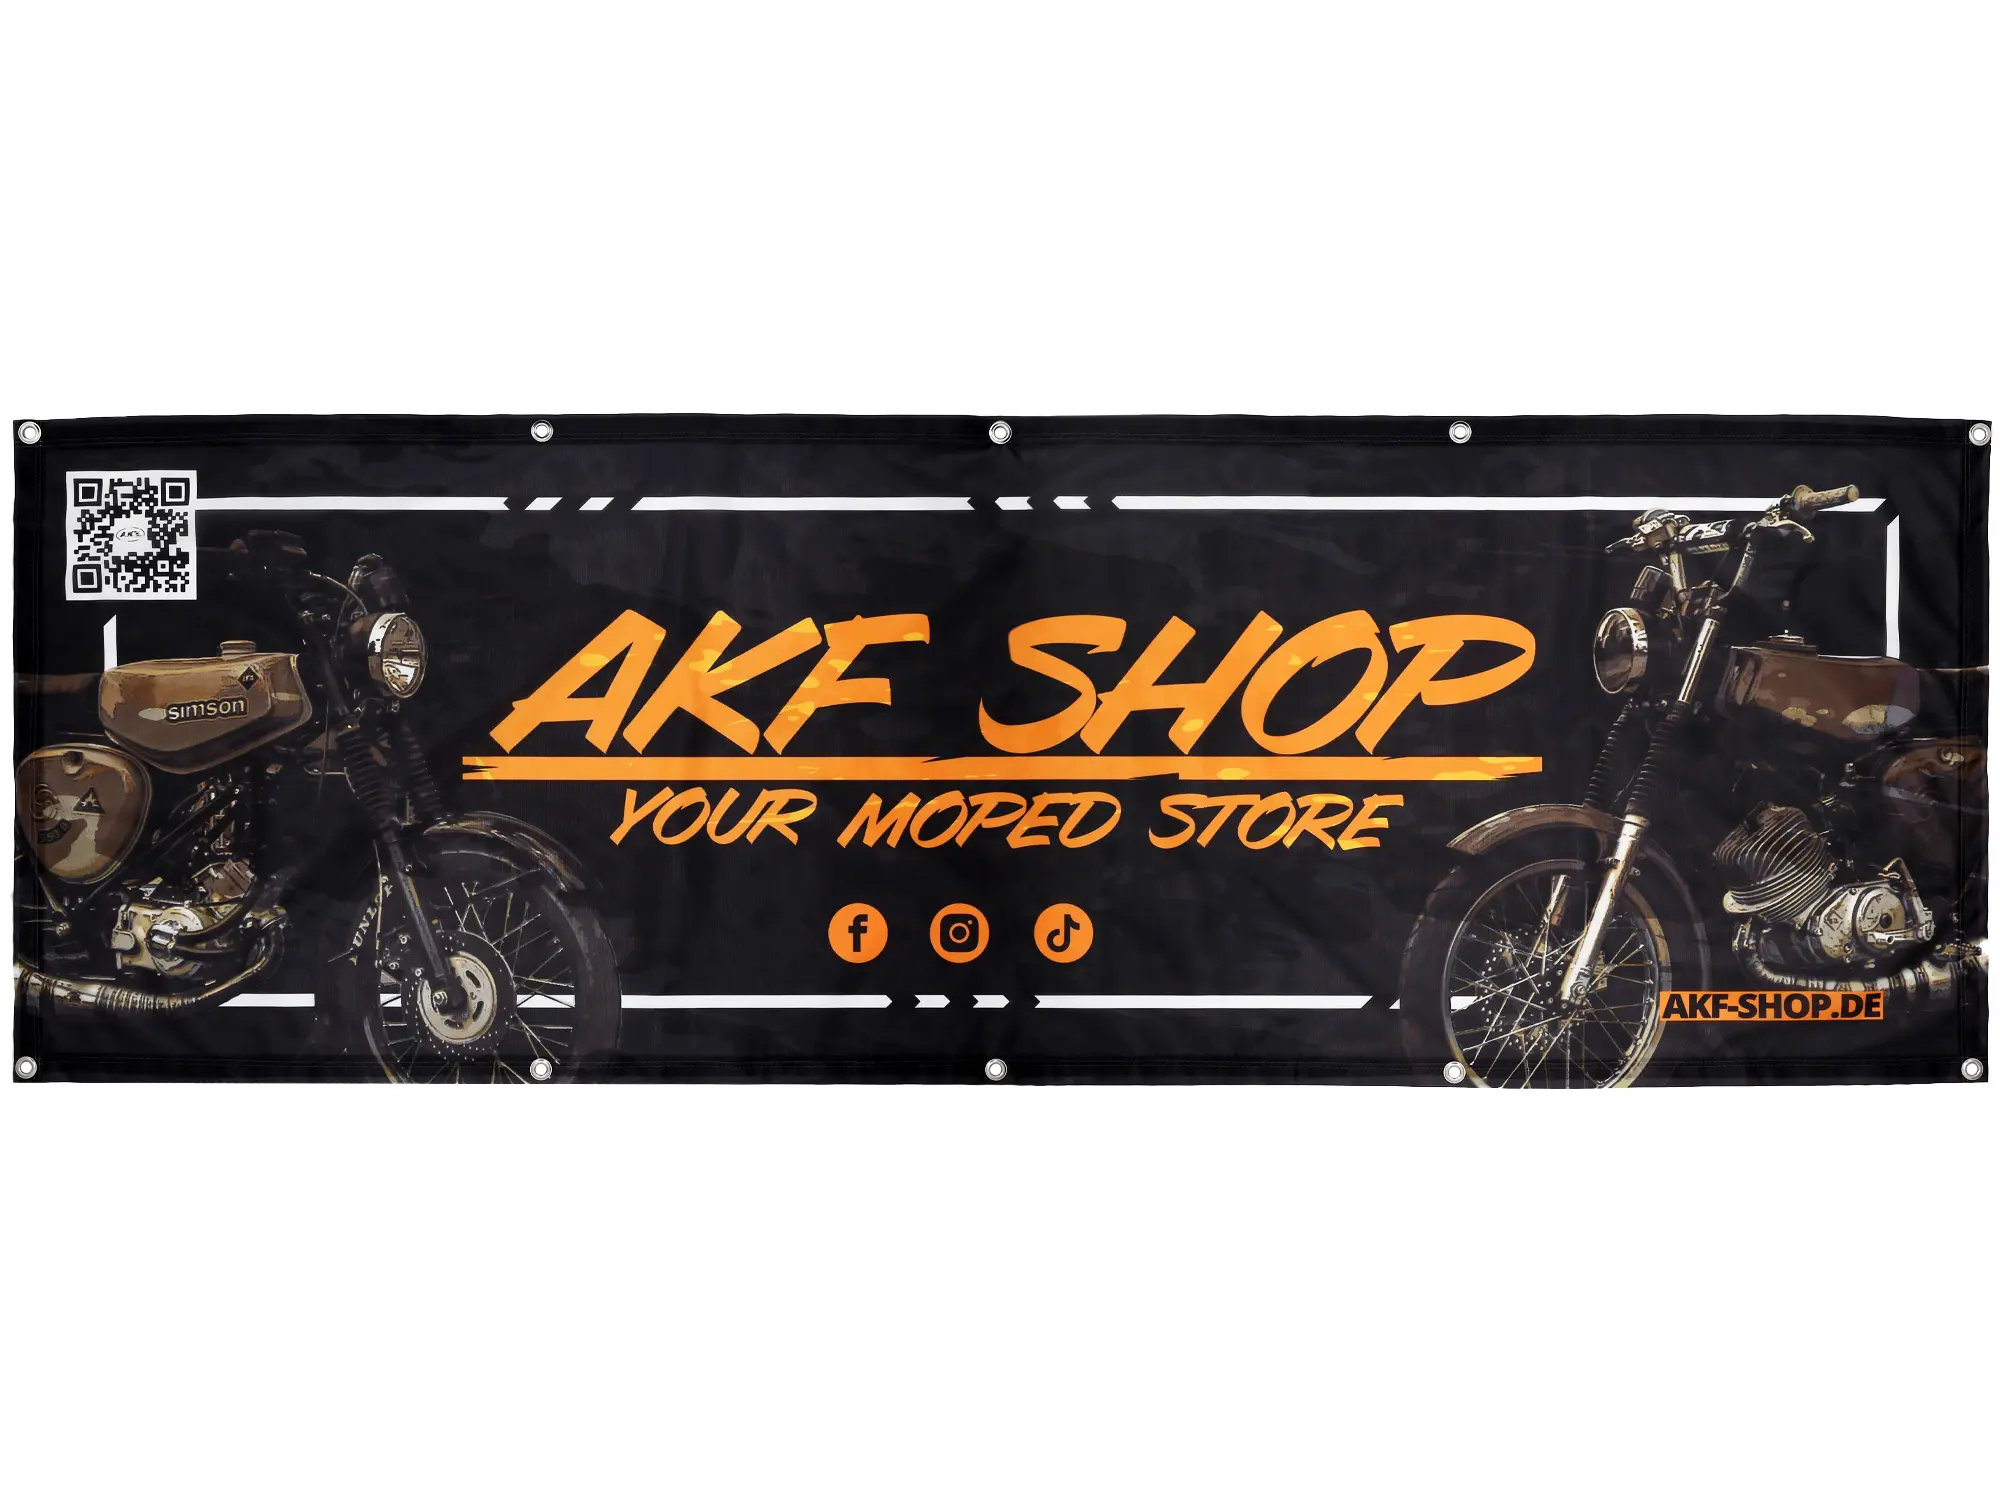 XL-Werkstattbanner AKF Shop - your moped store 215x73cm, Art.-Nr.: 10076895 - Bild 1